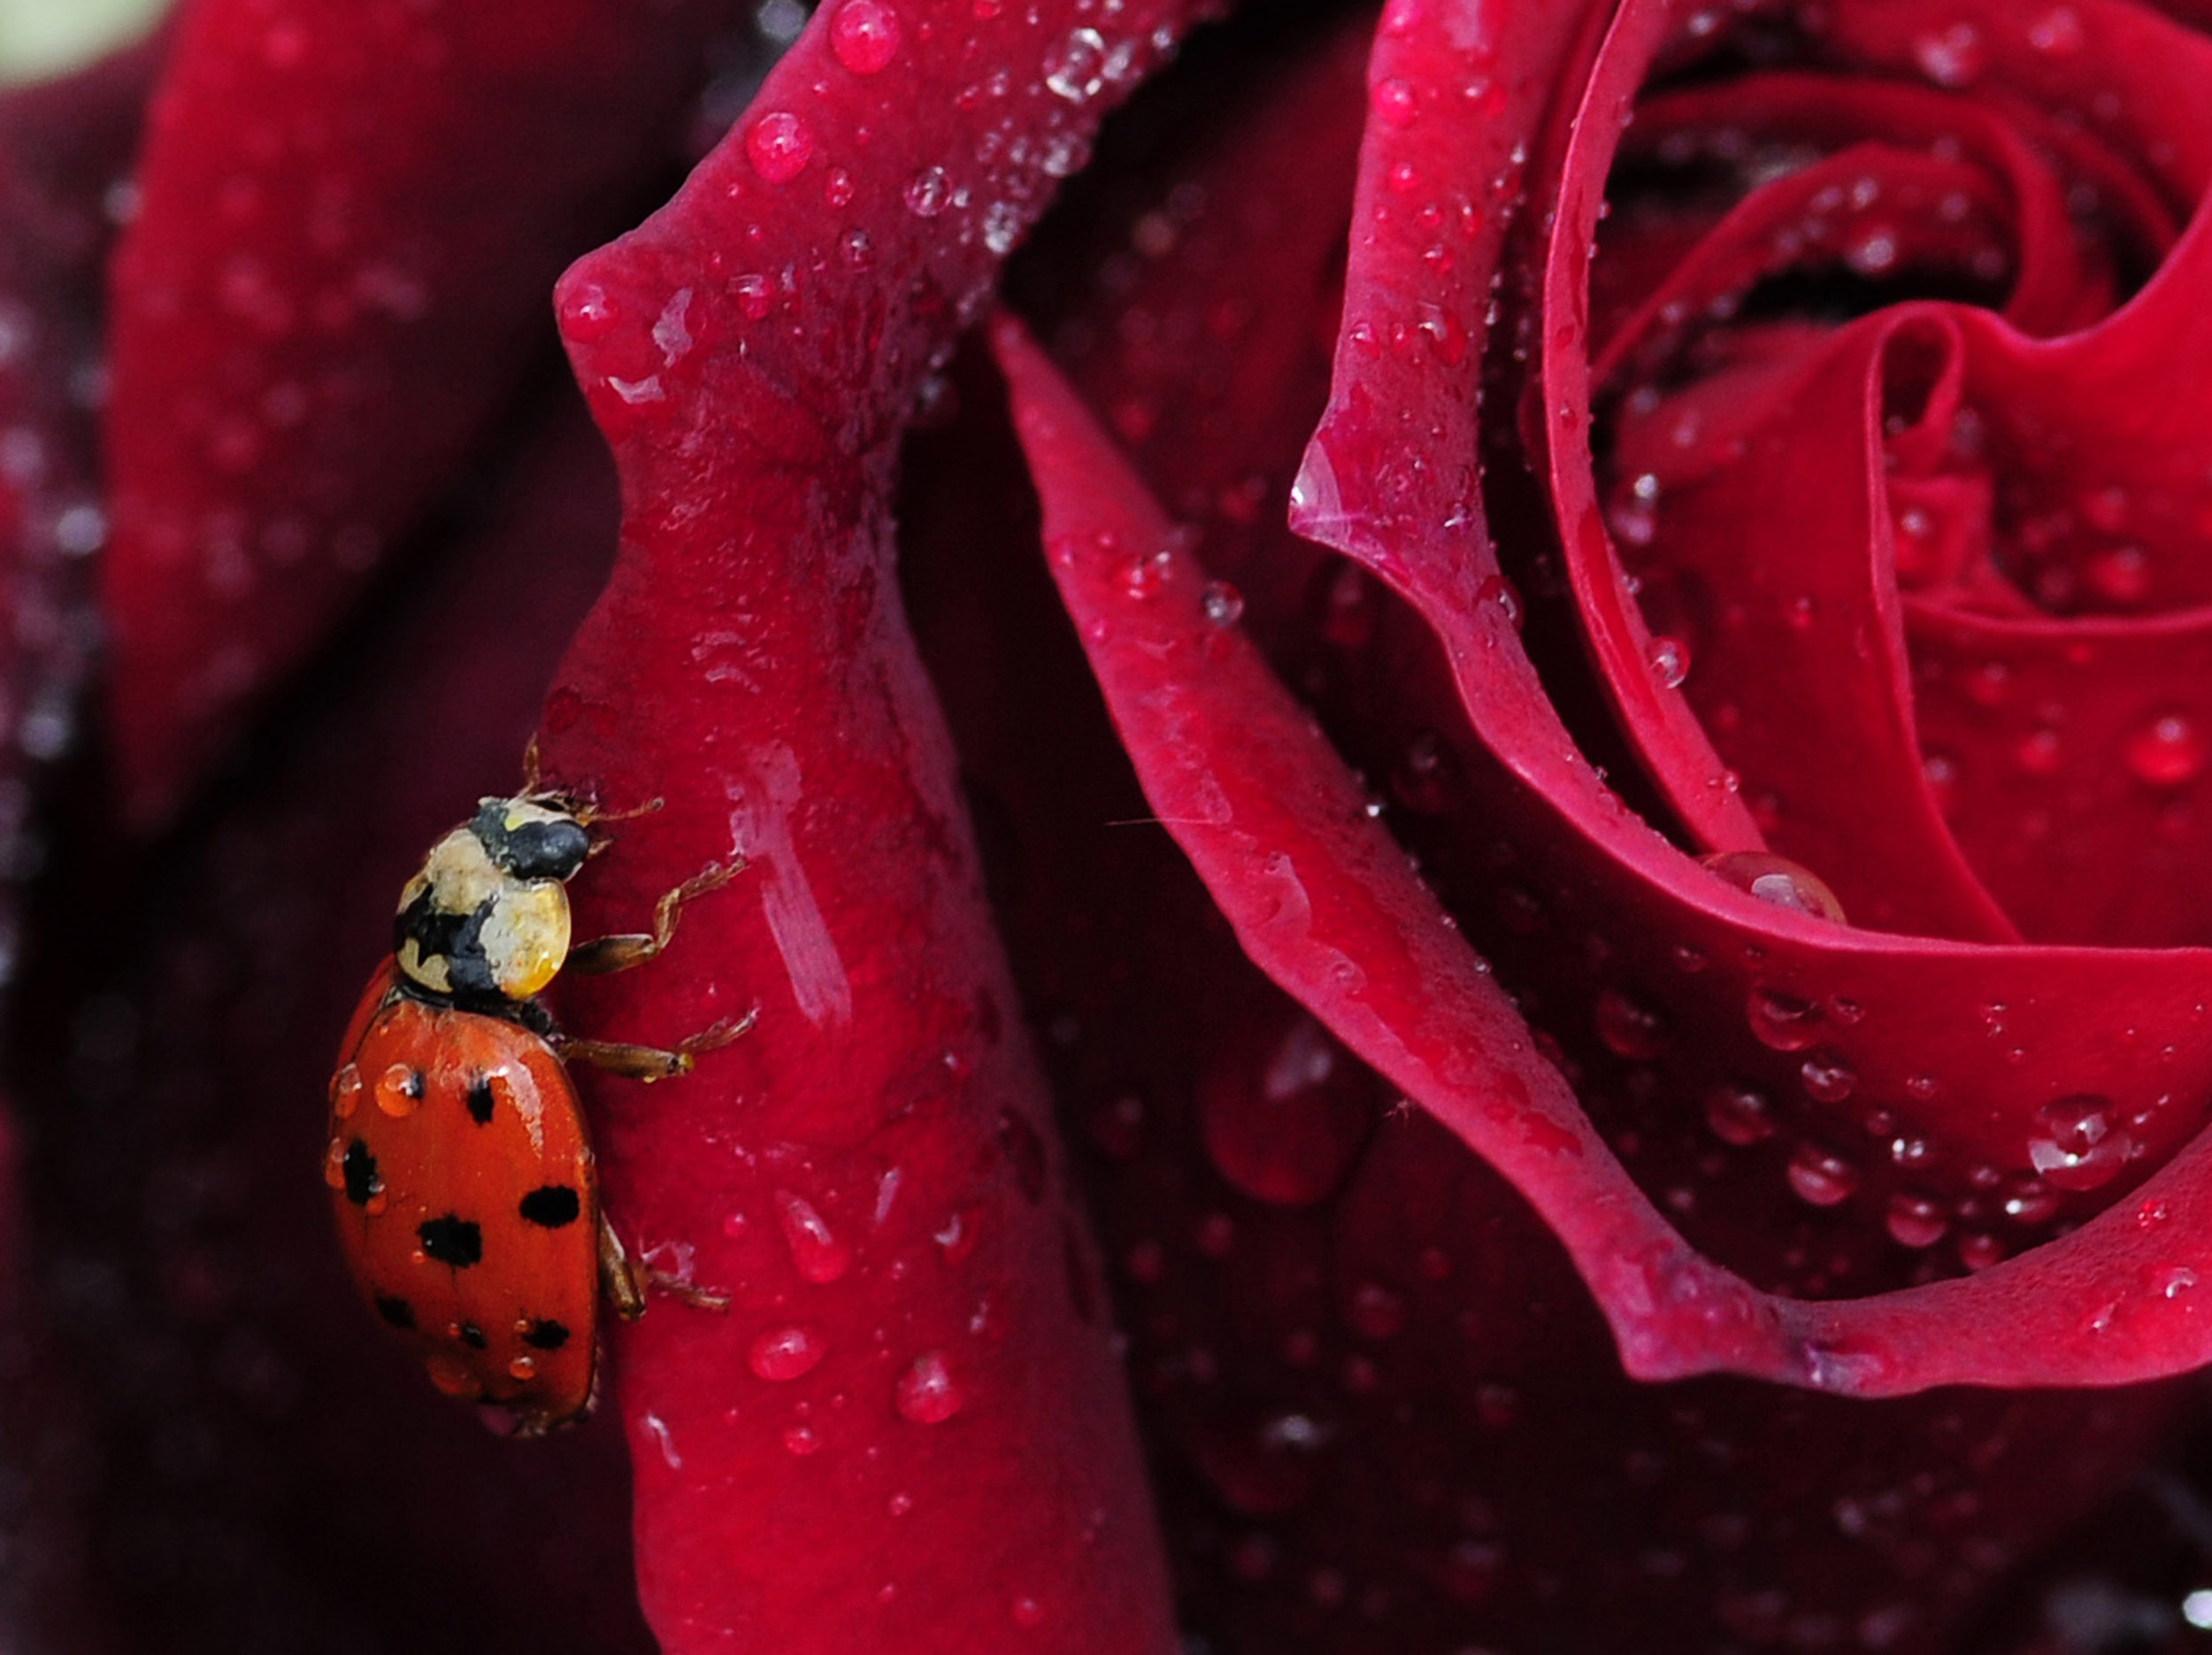 Harlequin Ladybird, Harmonia Axyridis, on a red rose petal